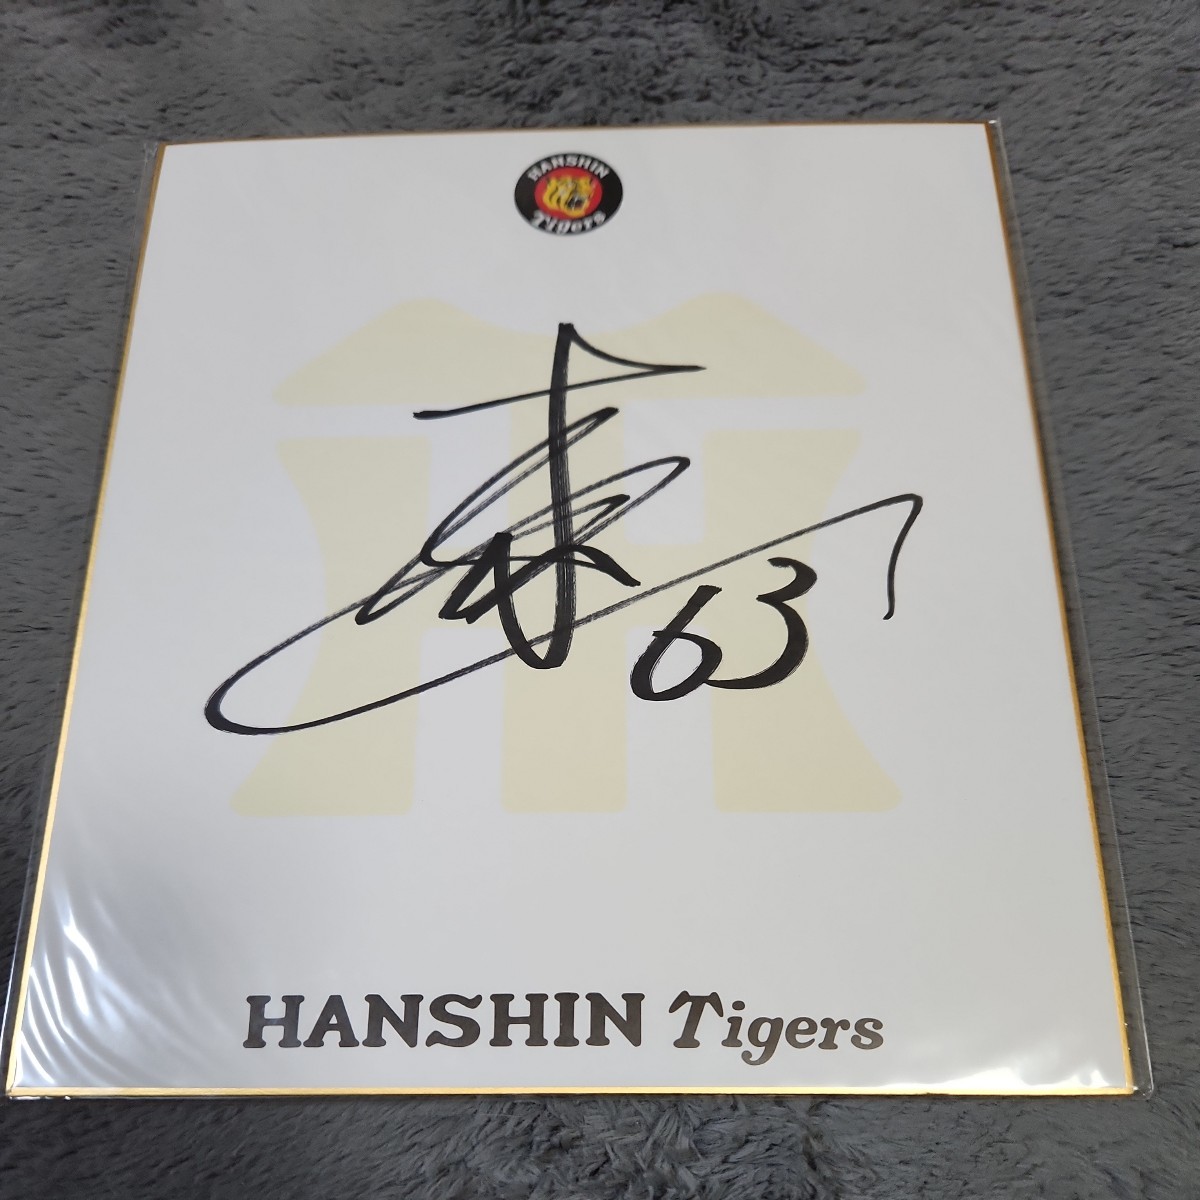 हनशिन टाइगर्स युतारो इटायामा को टीम द्वारा हस्ताक्षरित किया गया, बेसबॉल, यादगार, संबंधित सामान, संकेत